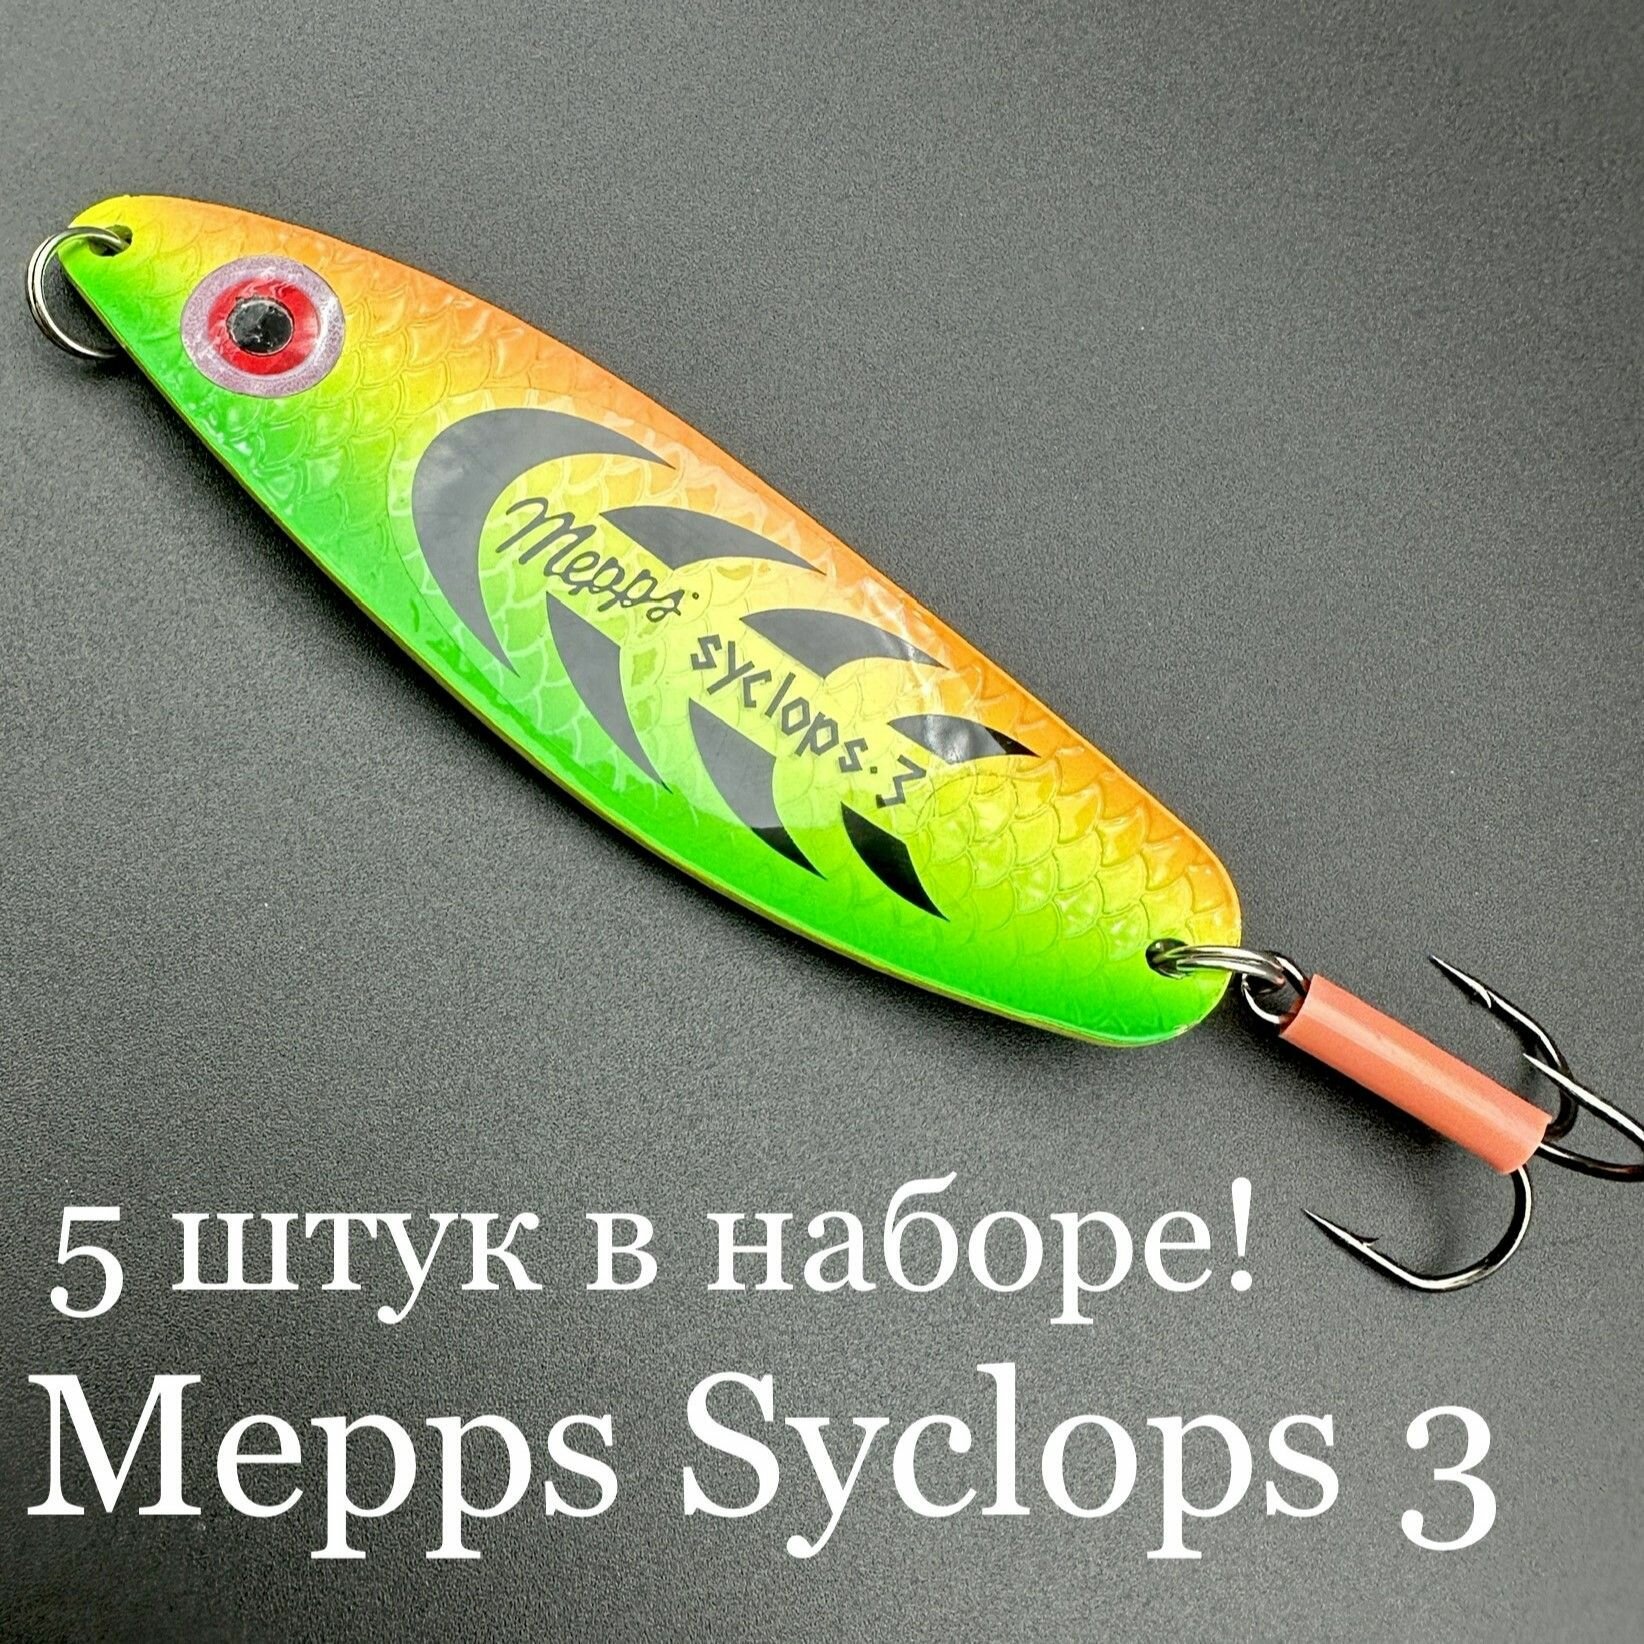 Набор из 5 блесен Mepps Syclops 3 26 грамм колебалок для рыбалки на хищника кумжу, семгу, лосось, окунь, щука, судак, берш сом сазан